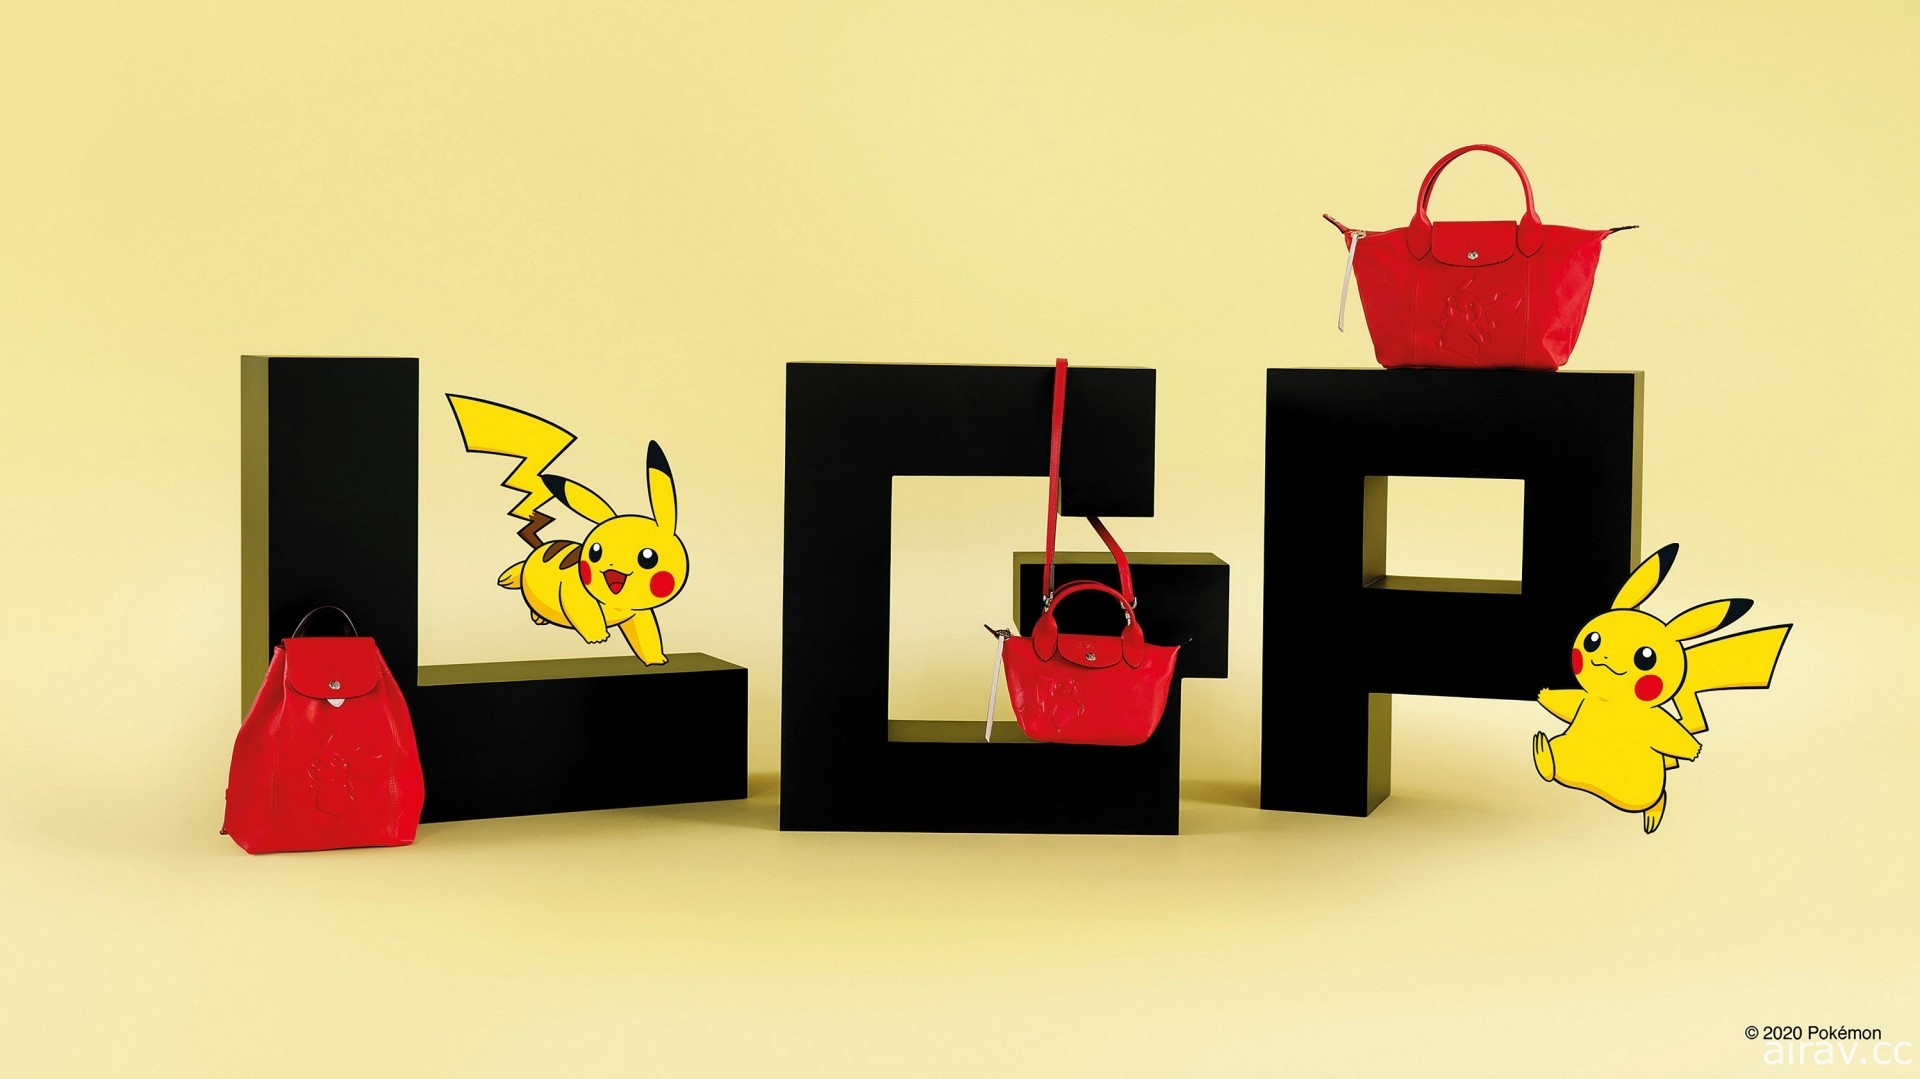 LONGCHAMP x Pokémon 聯名系列即將推出 開啟寶可夢時尚冒險之旅